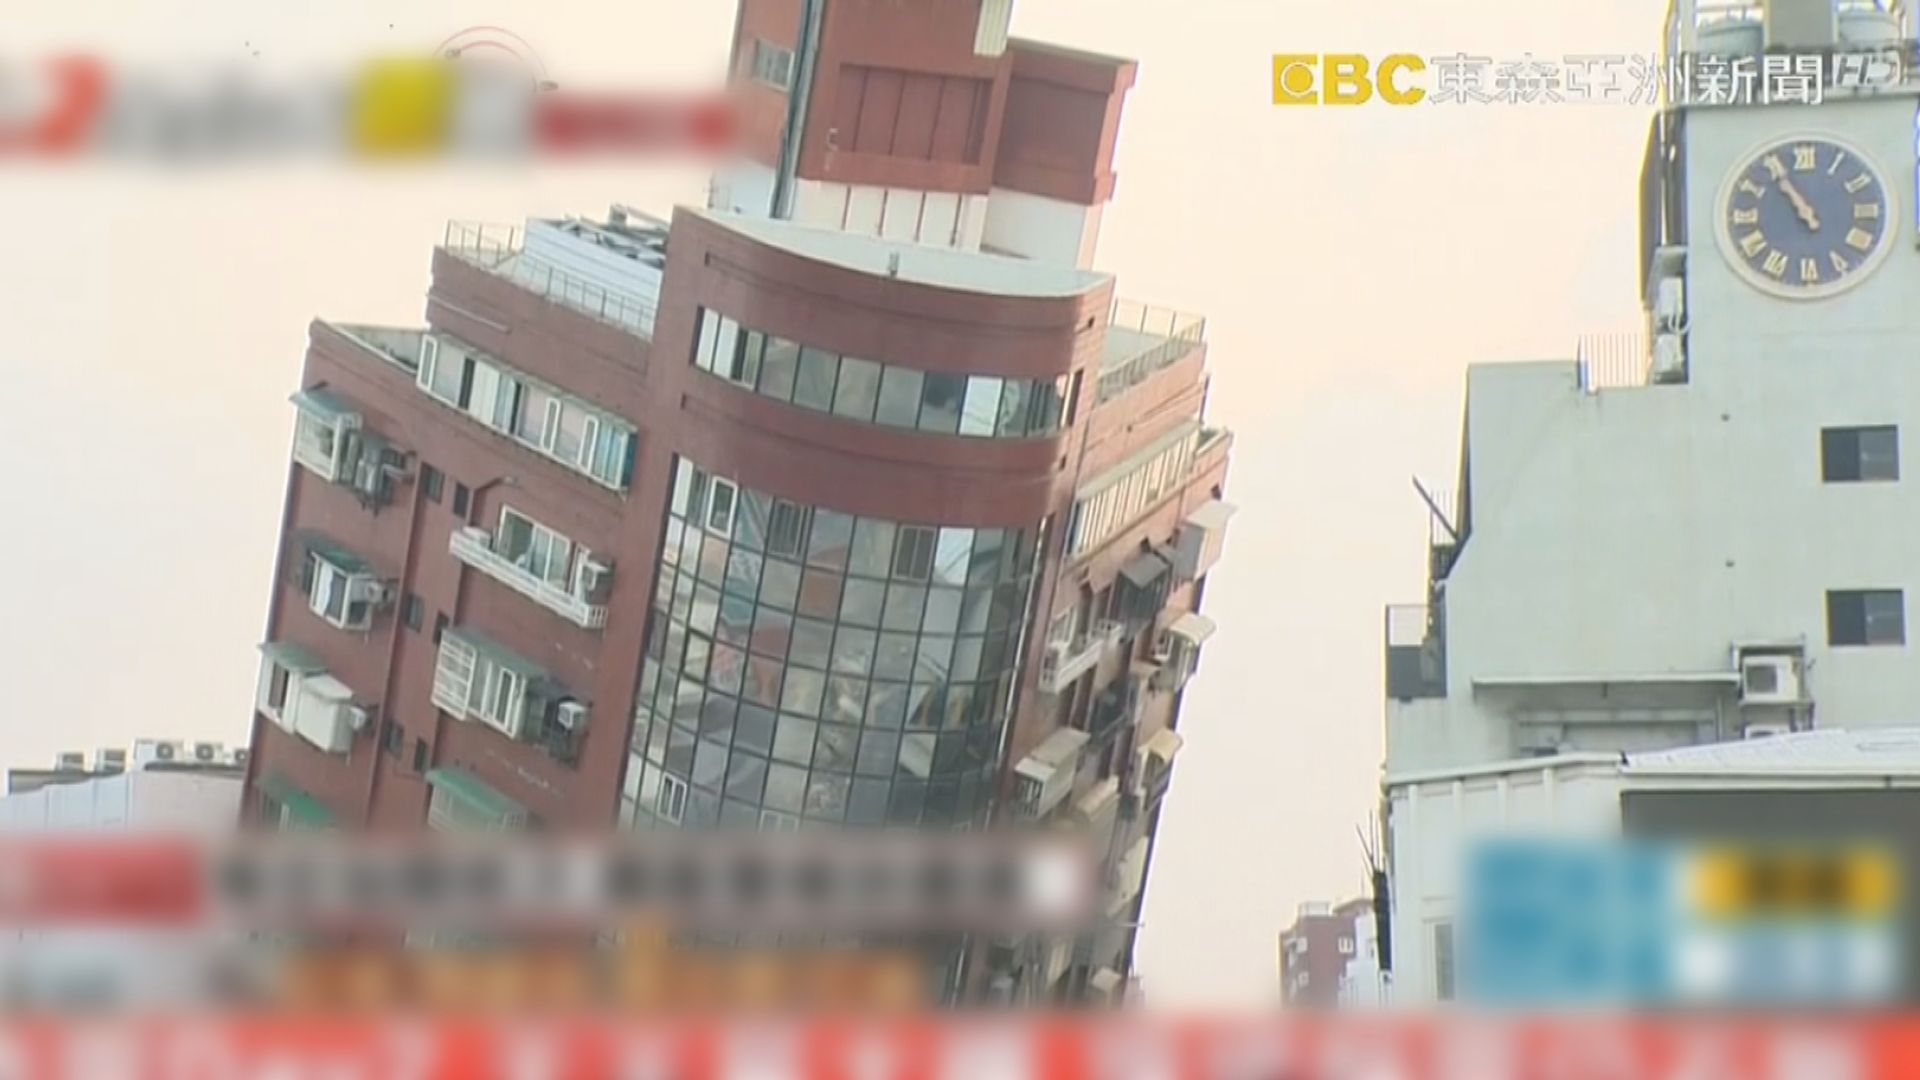 【台灣地震】當局連夜清拆部分建築物 包括出現嚴重傾斜的五層大樓